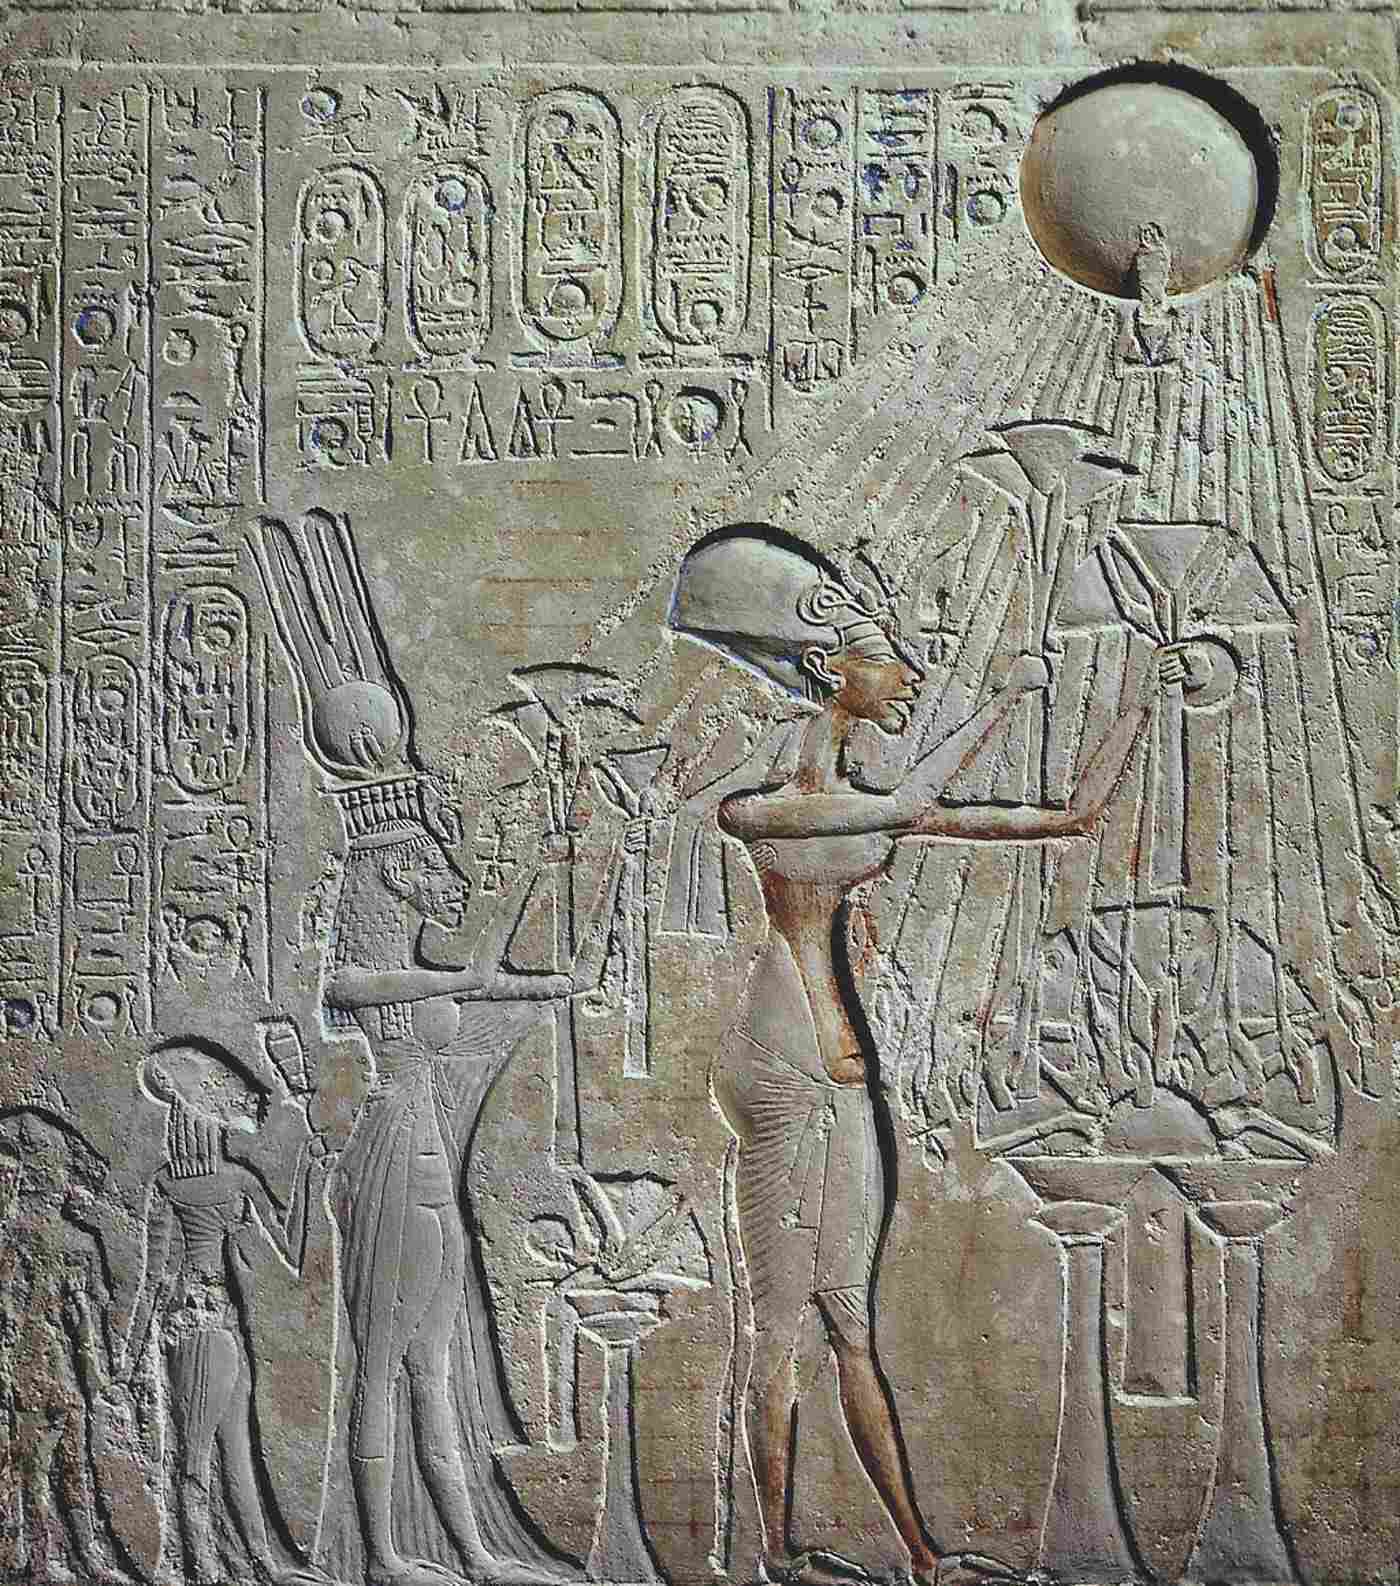 Cứu trợ Akhenaten, Nefertiti và hai cô con gái yêu quý Aten. Vương triều thứ 18, trị vì của Akhenaten.